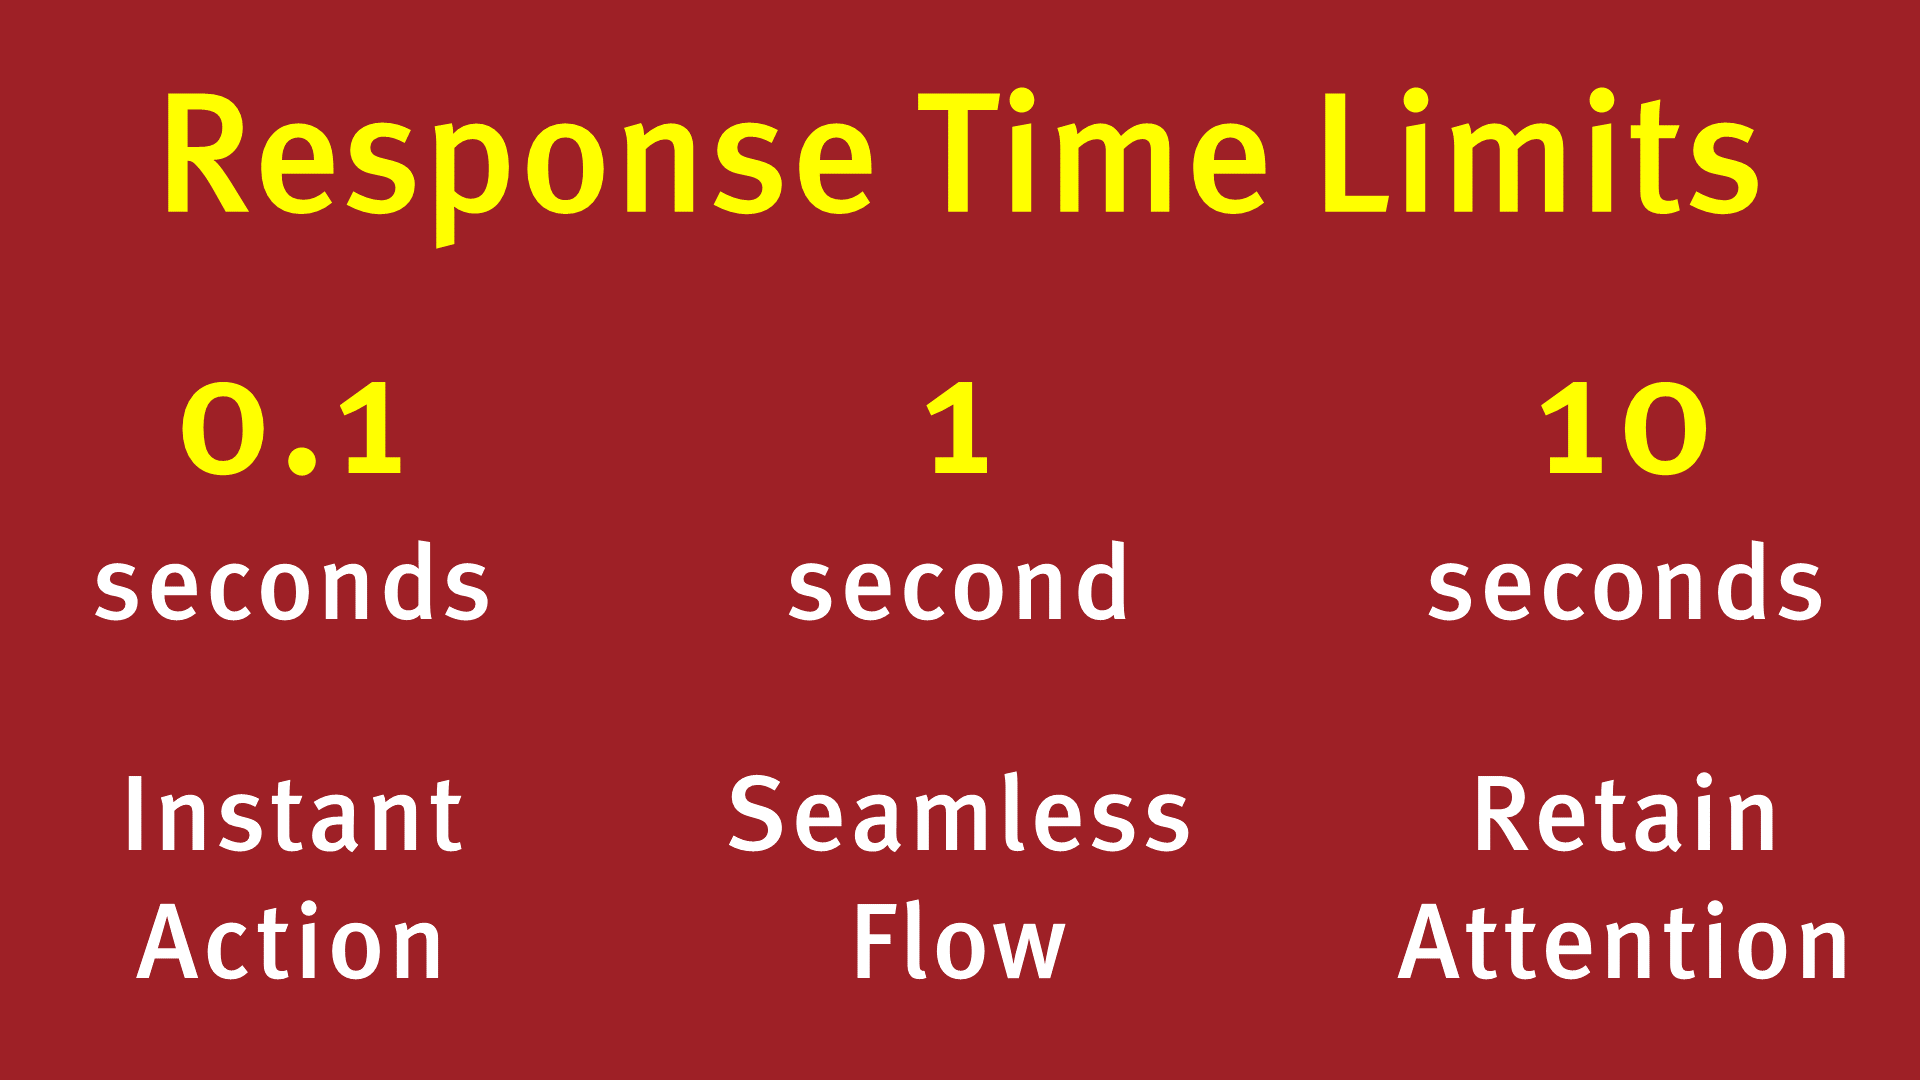 Response time limits